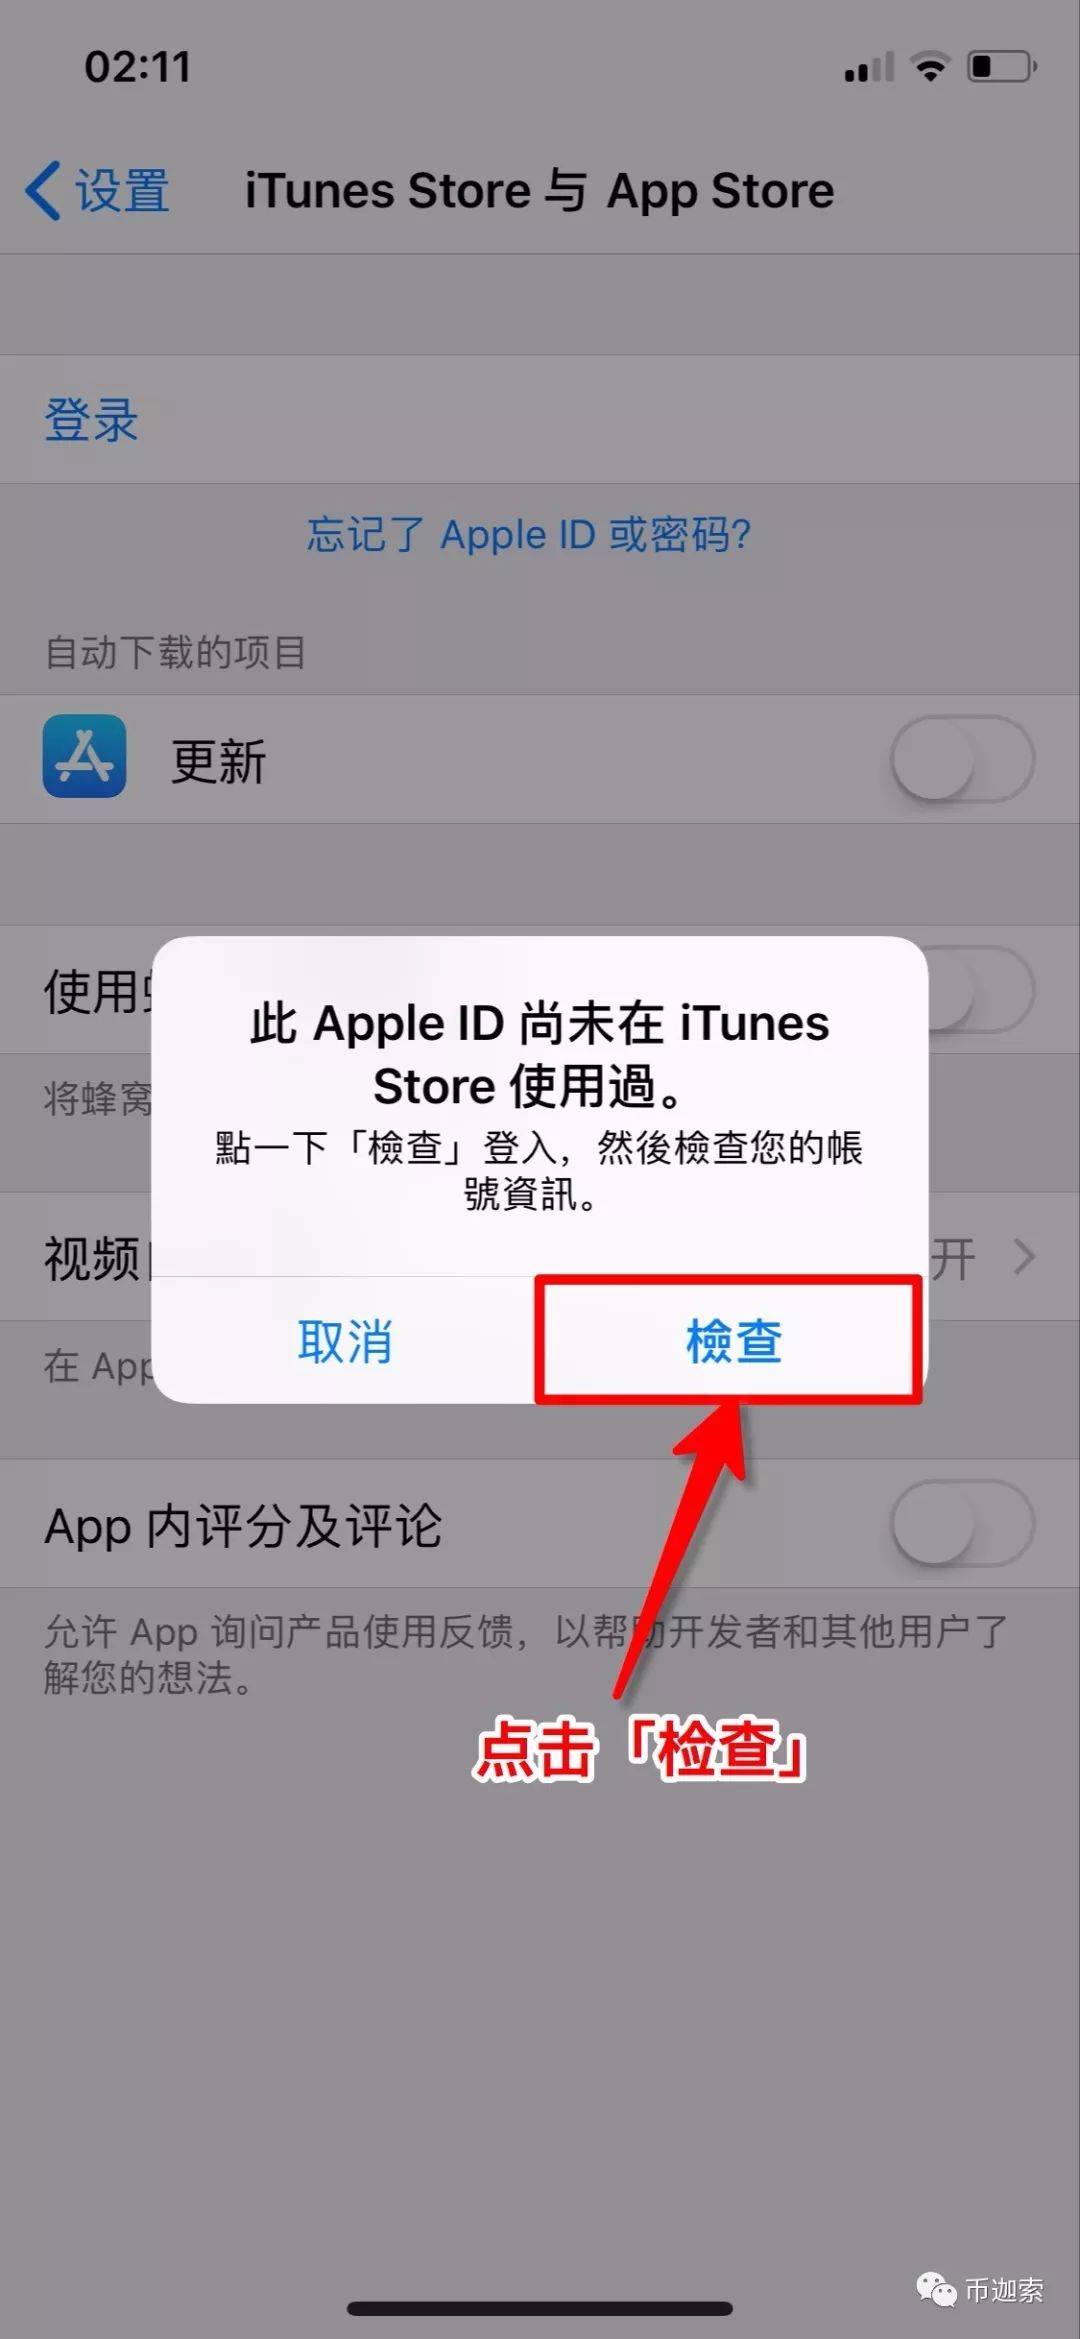 苹果账号id注册_怎样注册苹果id账号和密码_注册苹果id账号需要填写姓名